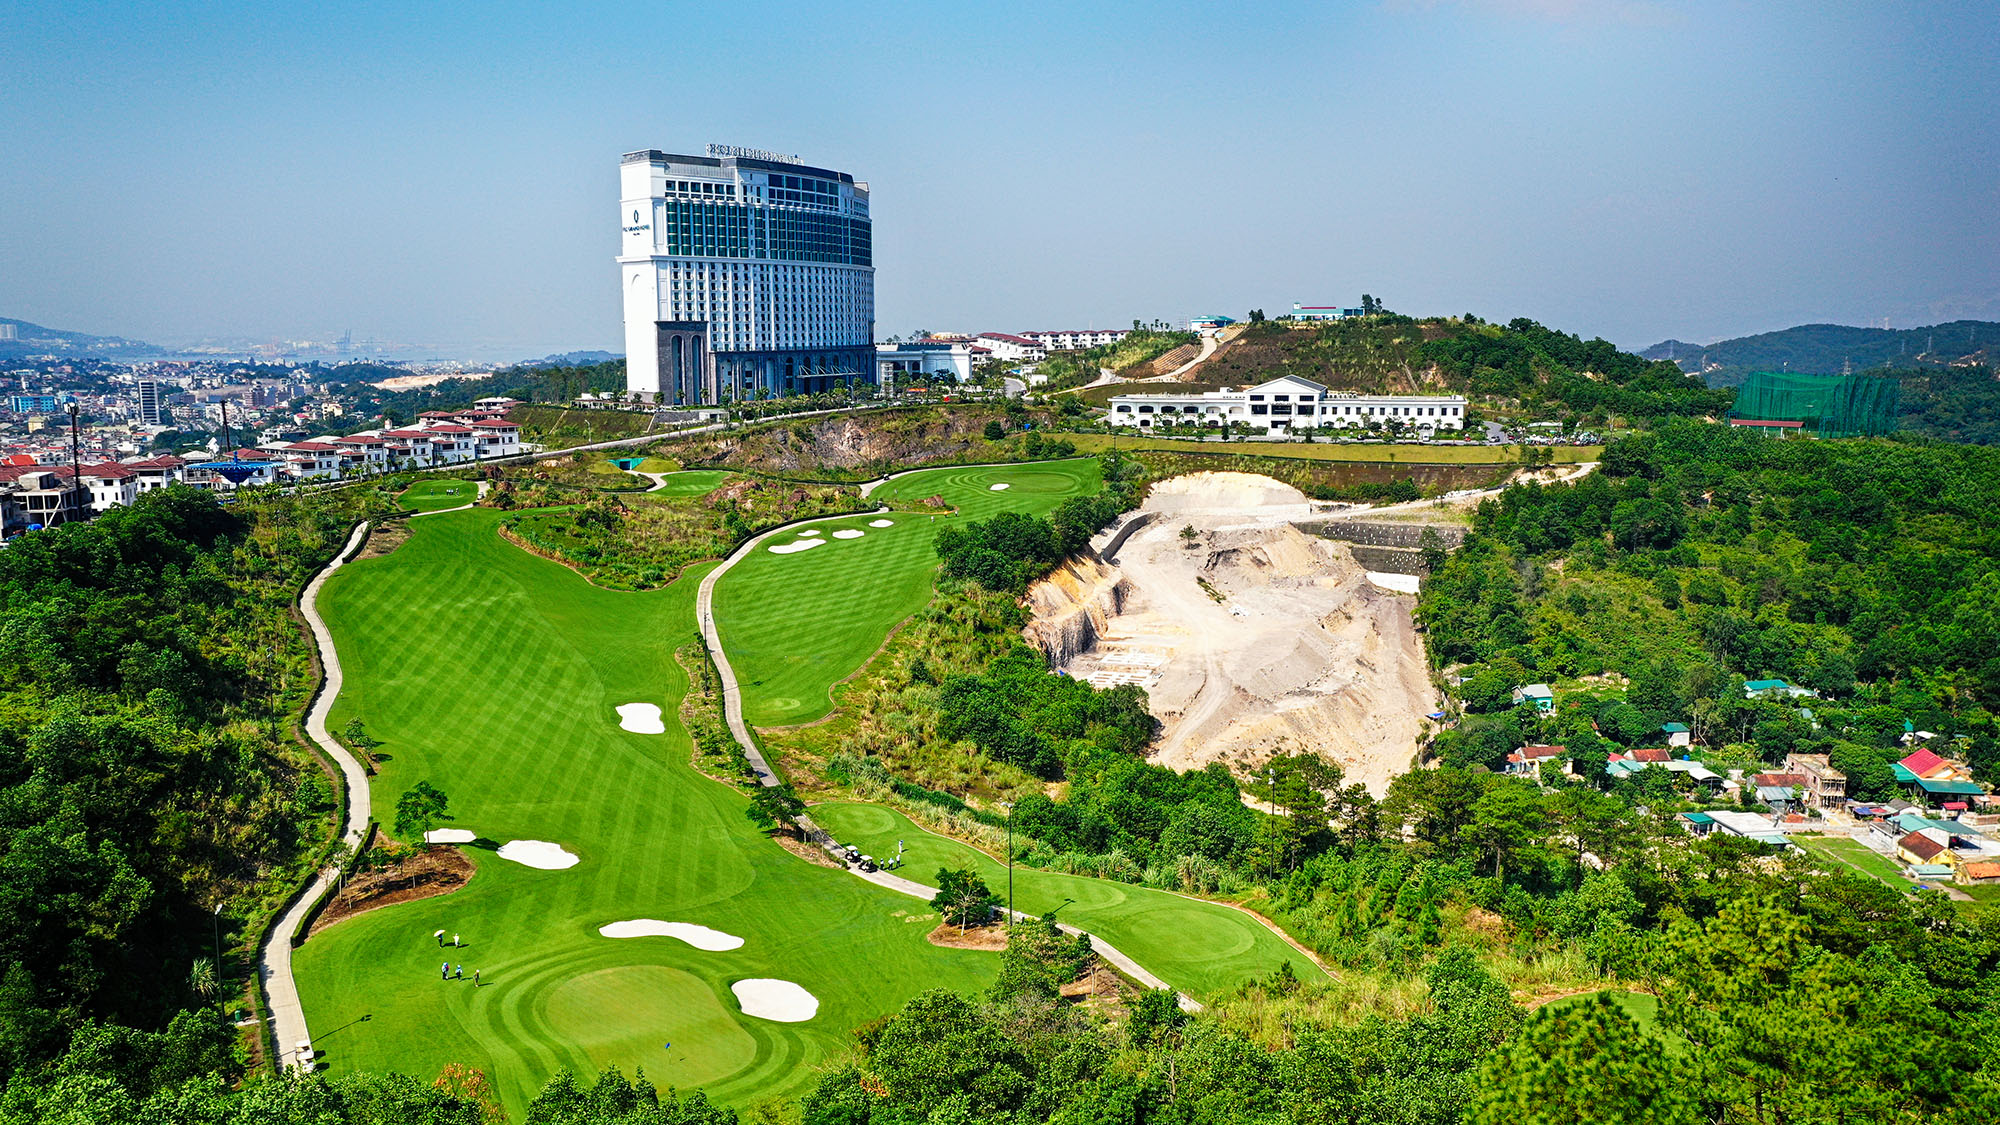 Nằm trong khu du lịch nghỉ dưỡng FLC, với địa hình, khung cảnh thiên nhiên độc đáo mang đến cho golf thủ nhiều trải nghiệm thú vị, sân golf đạt tiêu chuẩn quốc tế - FLC Ha Long Golf Club là địa điểm thi đấu được ưu ái lựa chọn cho nhiều giải golf tầm cỡ.